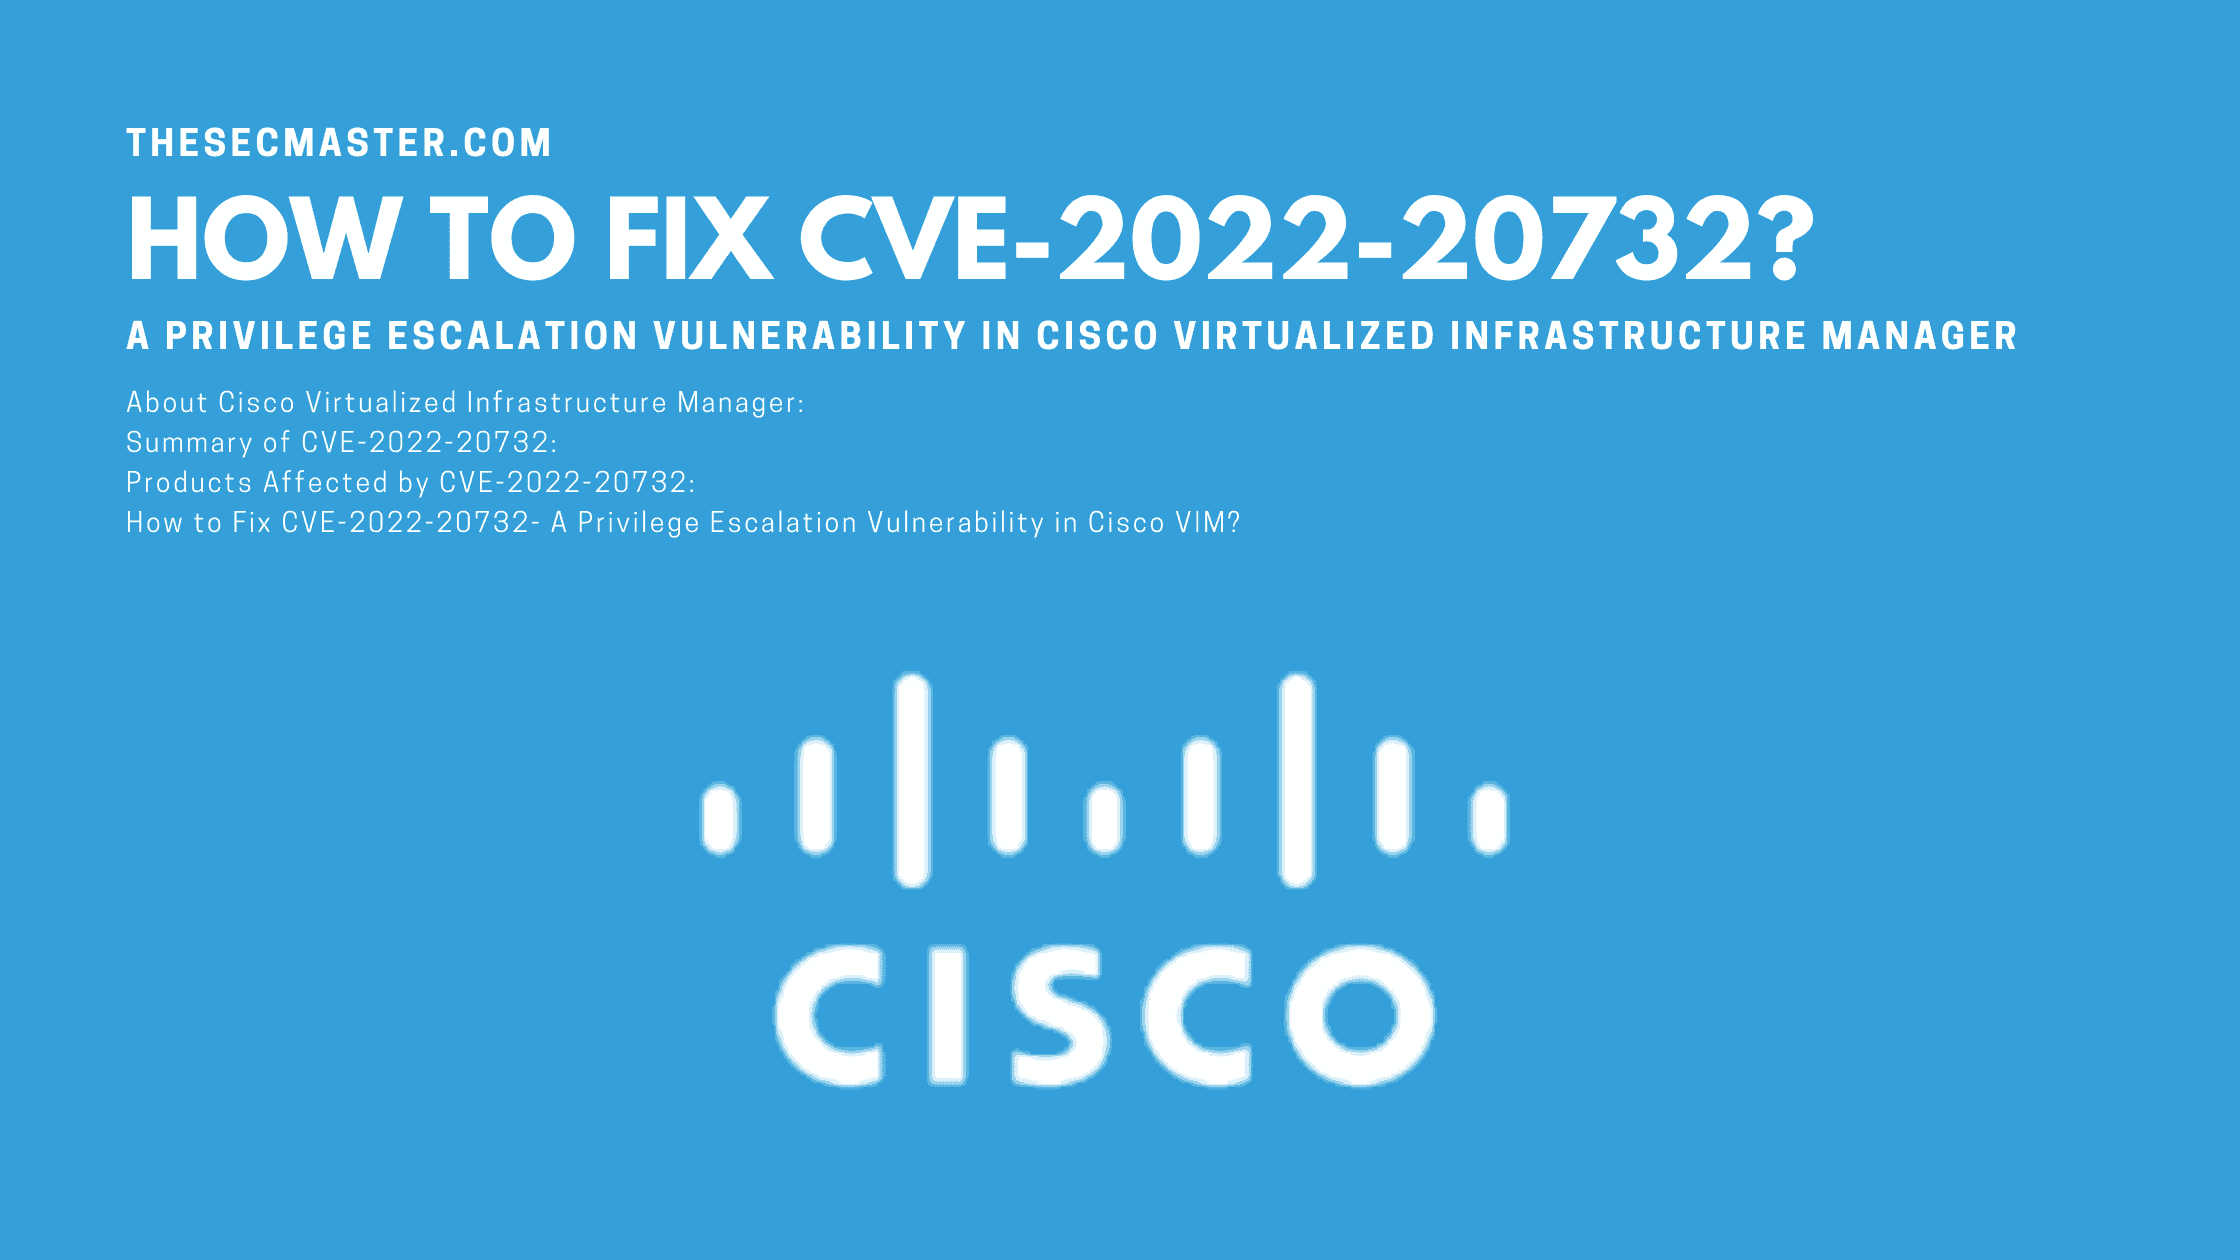 How To Fix Cve 2022 20732 A Privilege Escalation Vulnerability In Cisco Vim